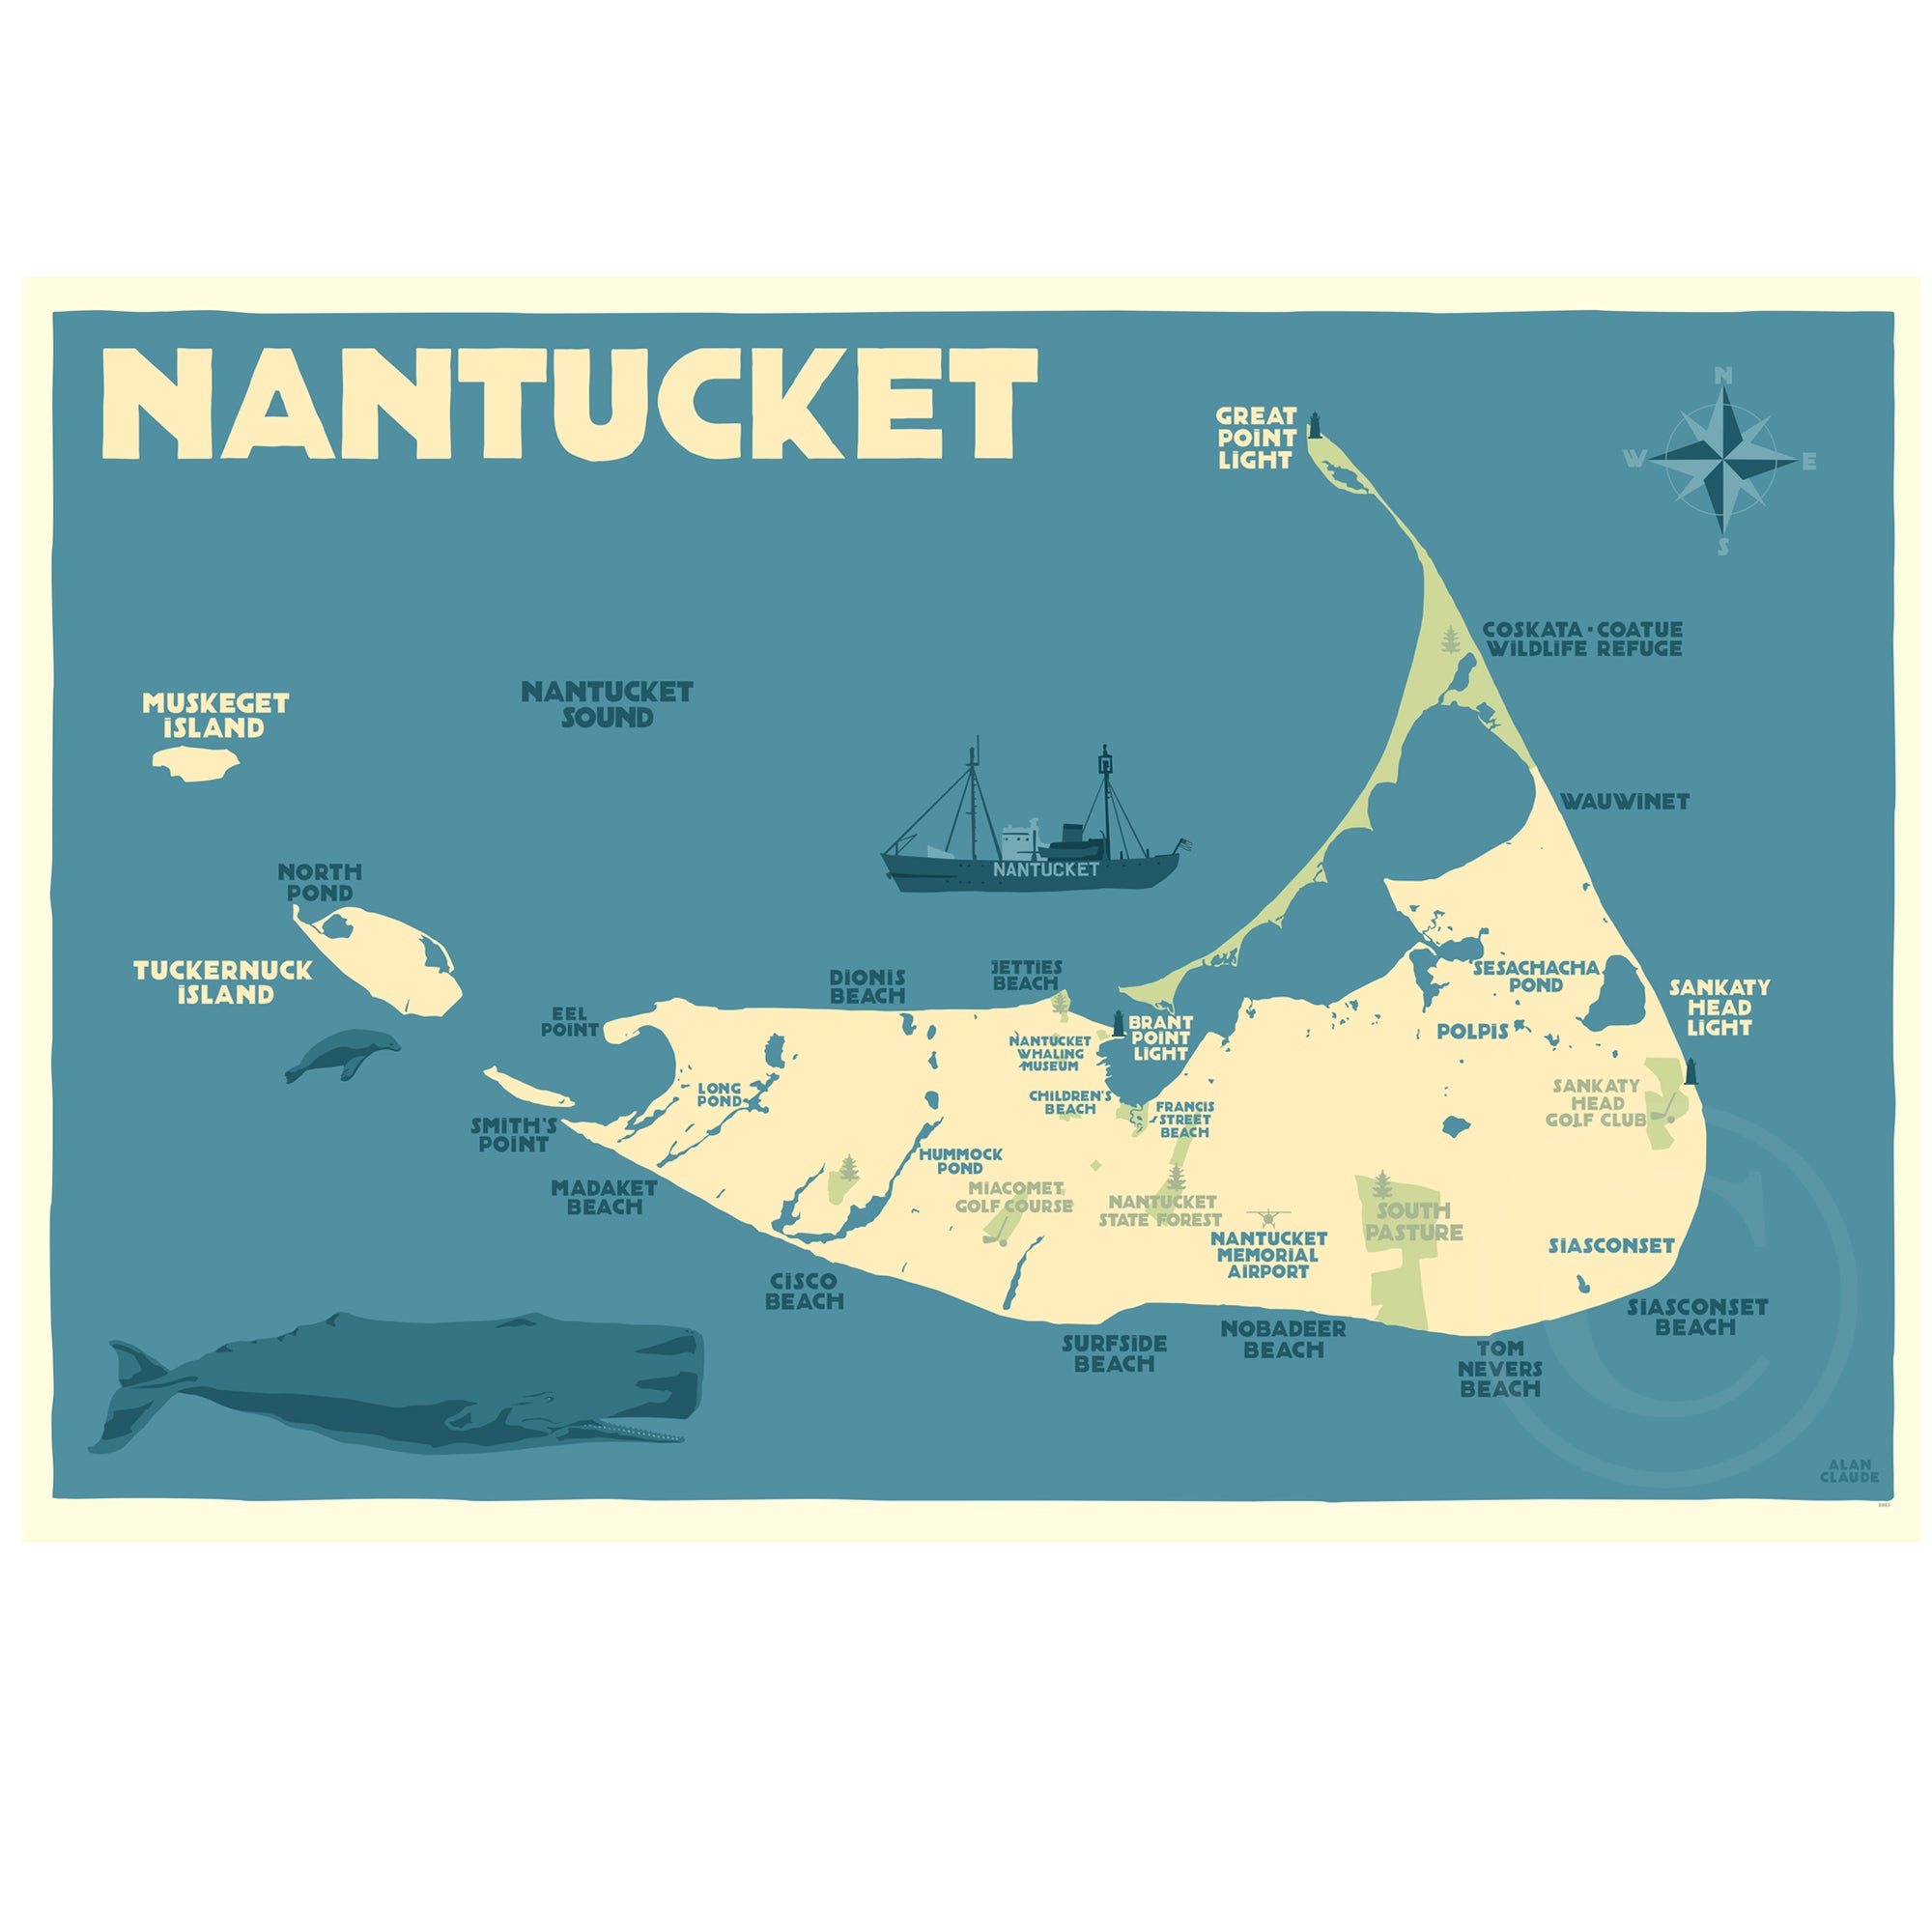 Nantucket Map Art Print 24" x 36" Travel Poster By Alan Claude - Massachusetts